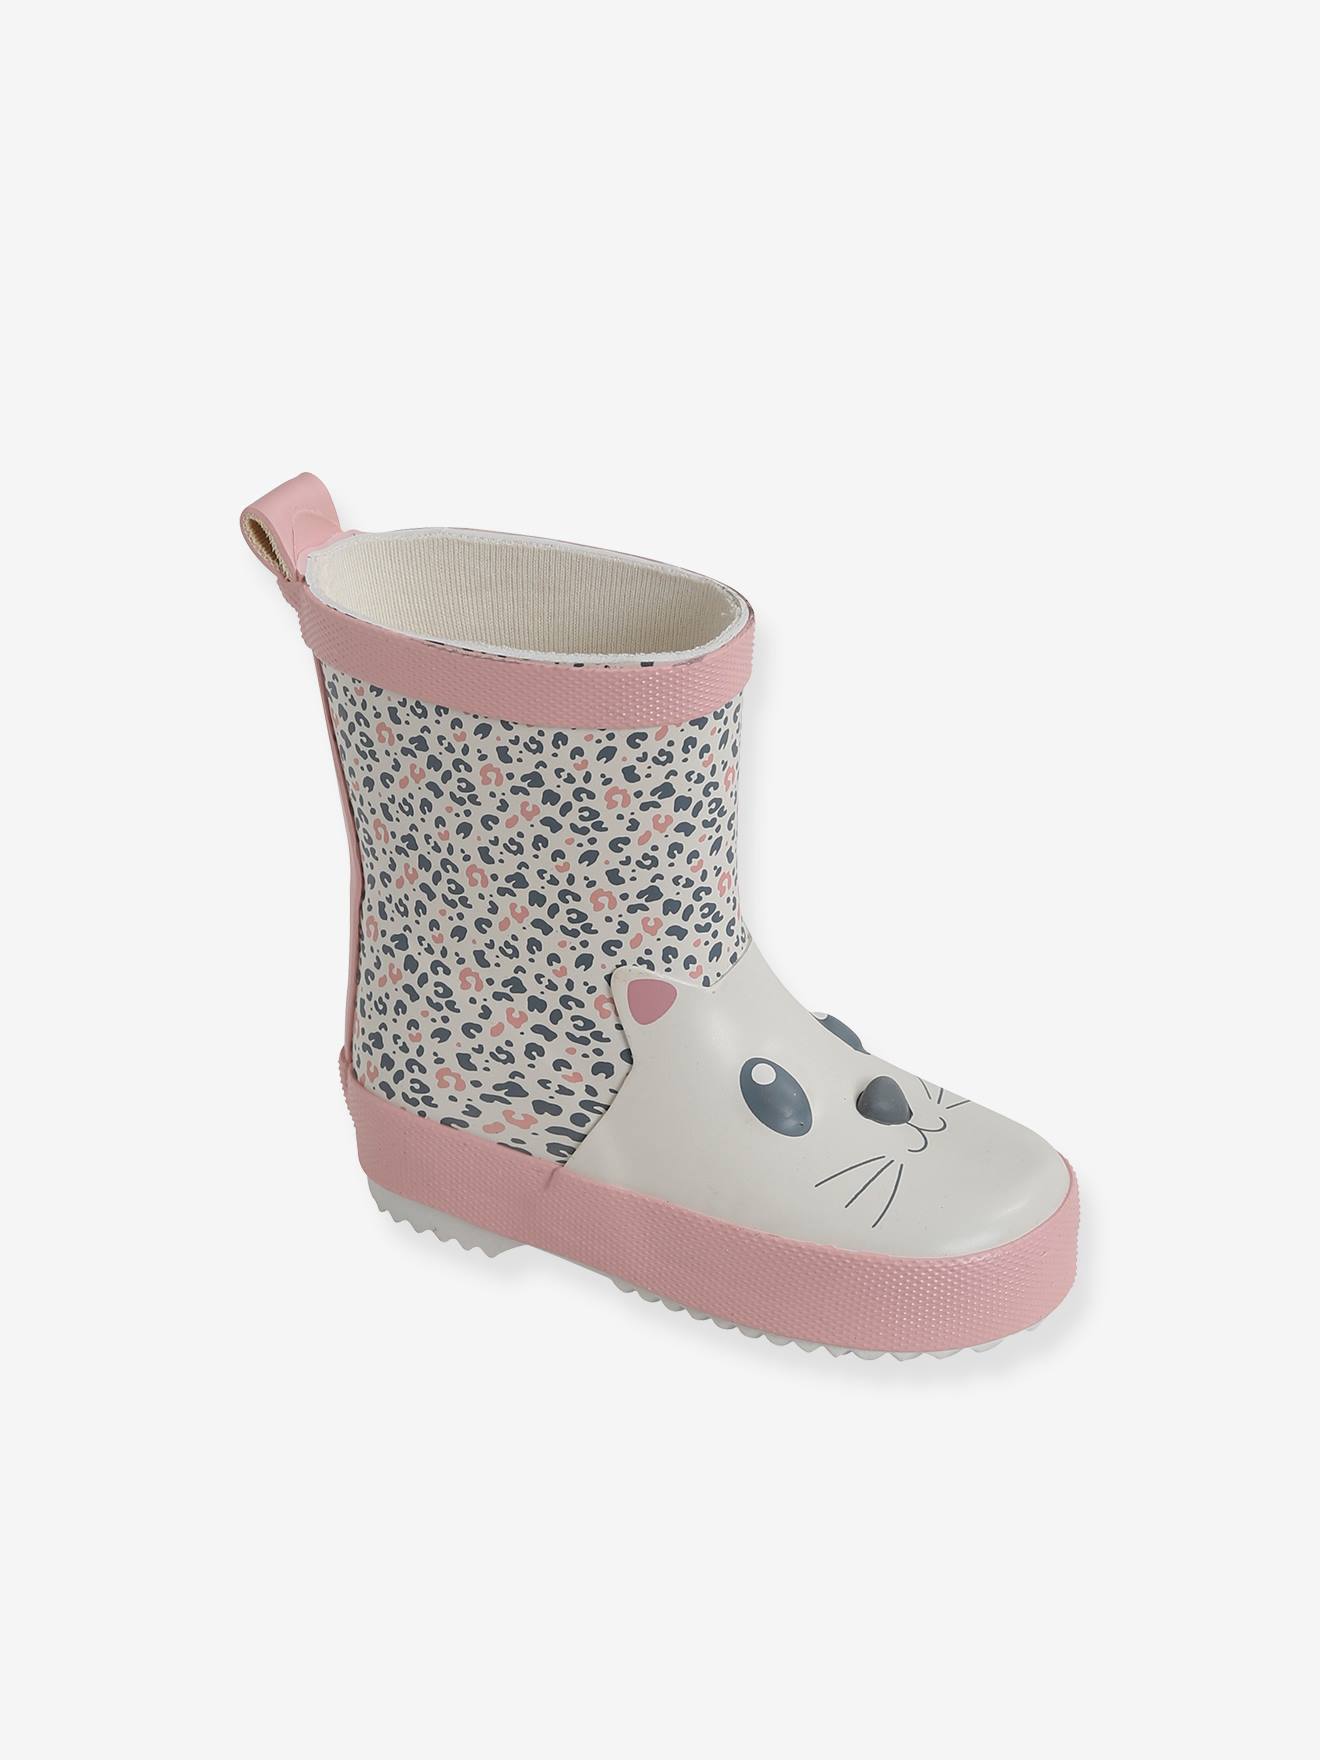 Kinderschuhe Stiefel Stiefeletten für Baby Mädchen Boots Warm Winterschuhe 8977A 